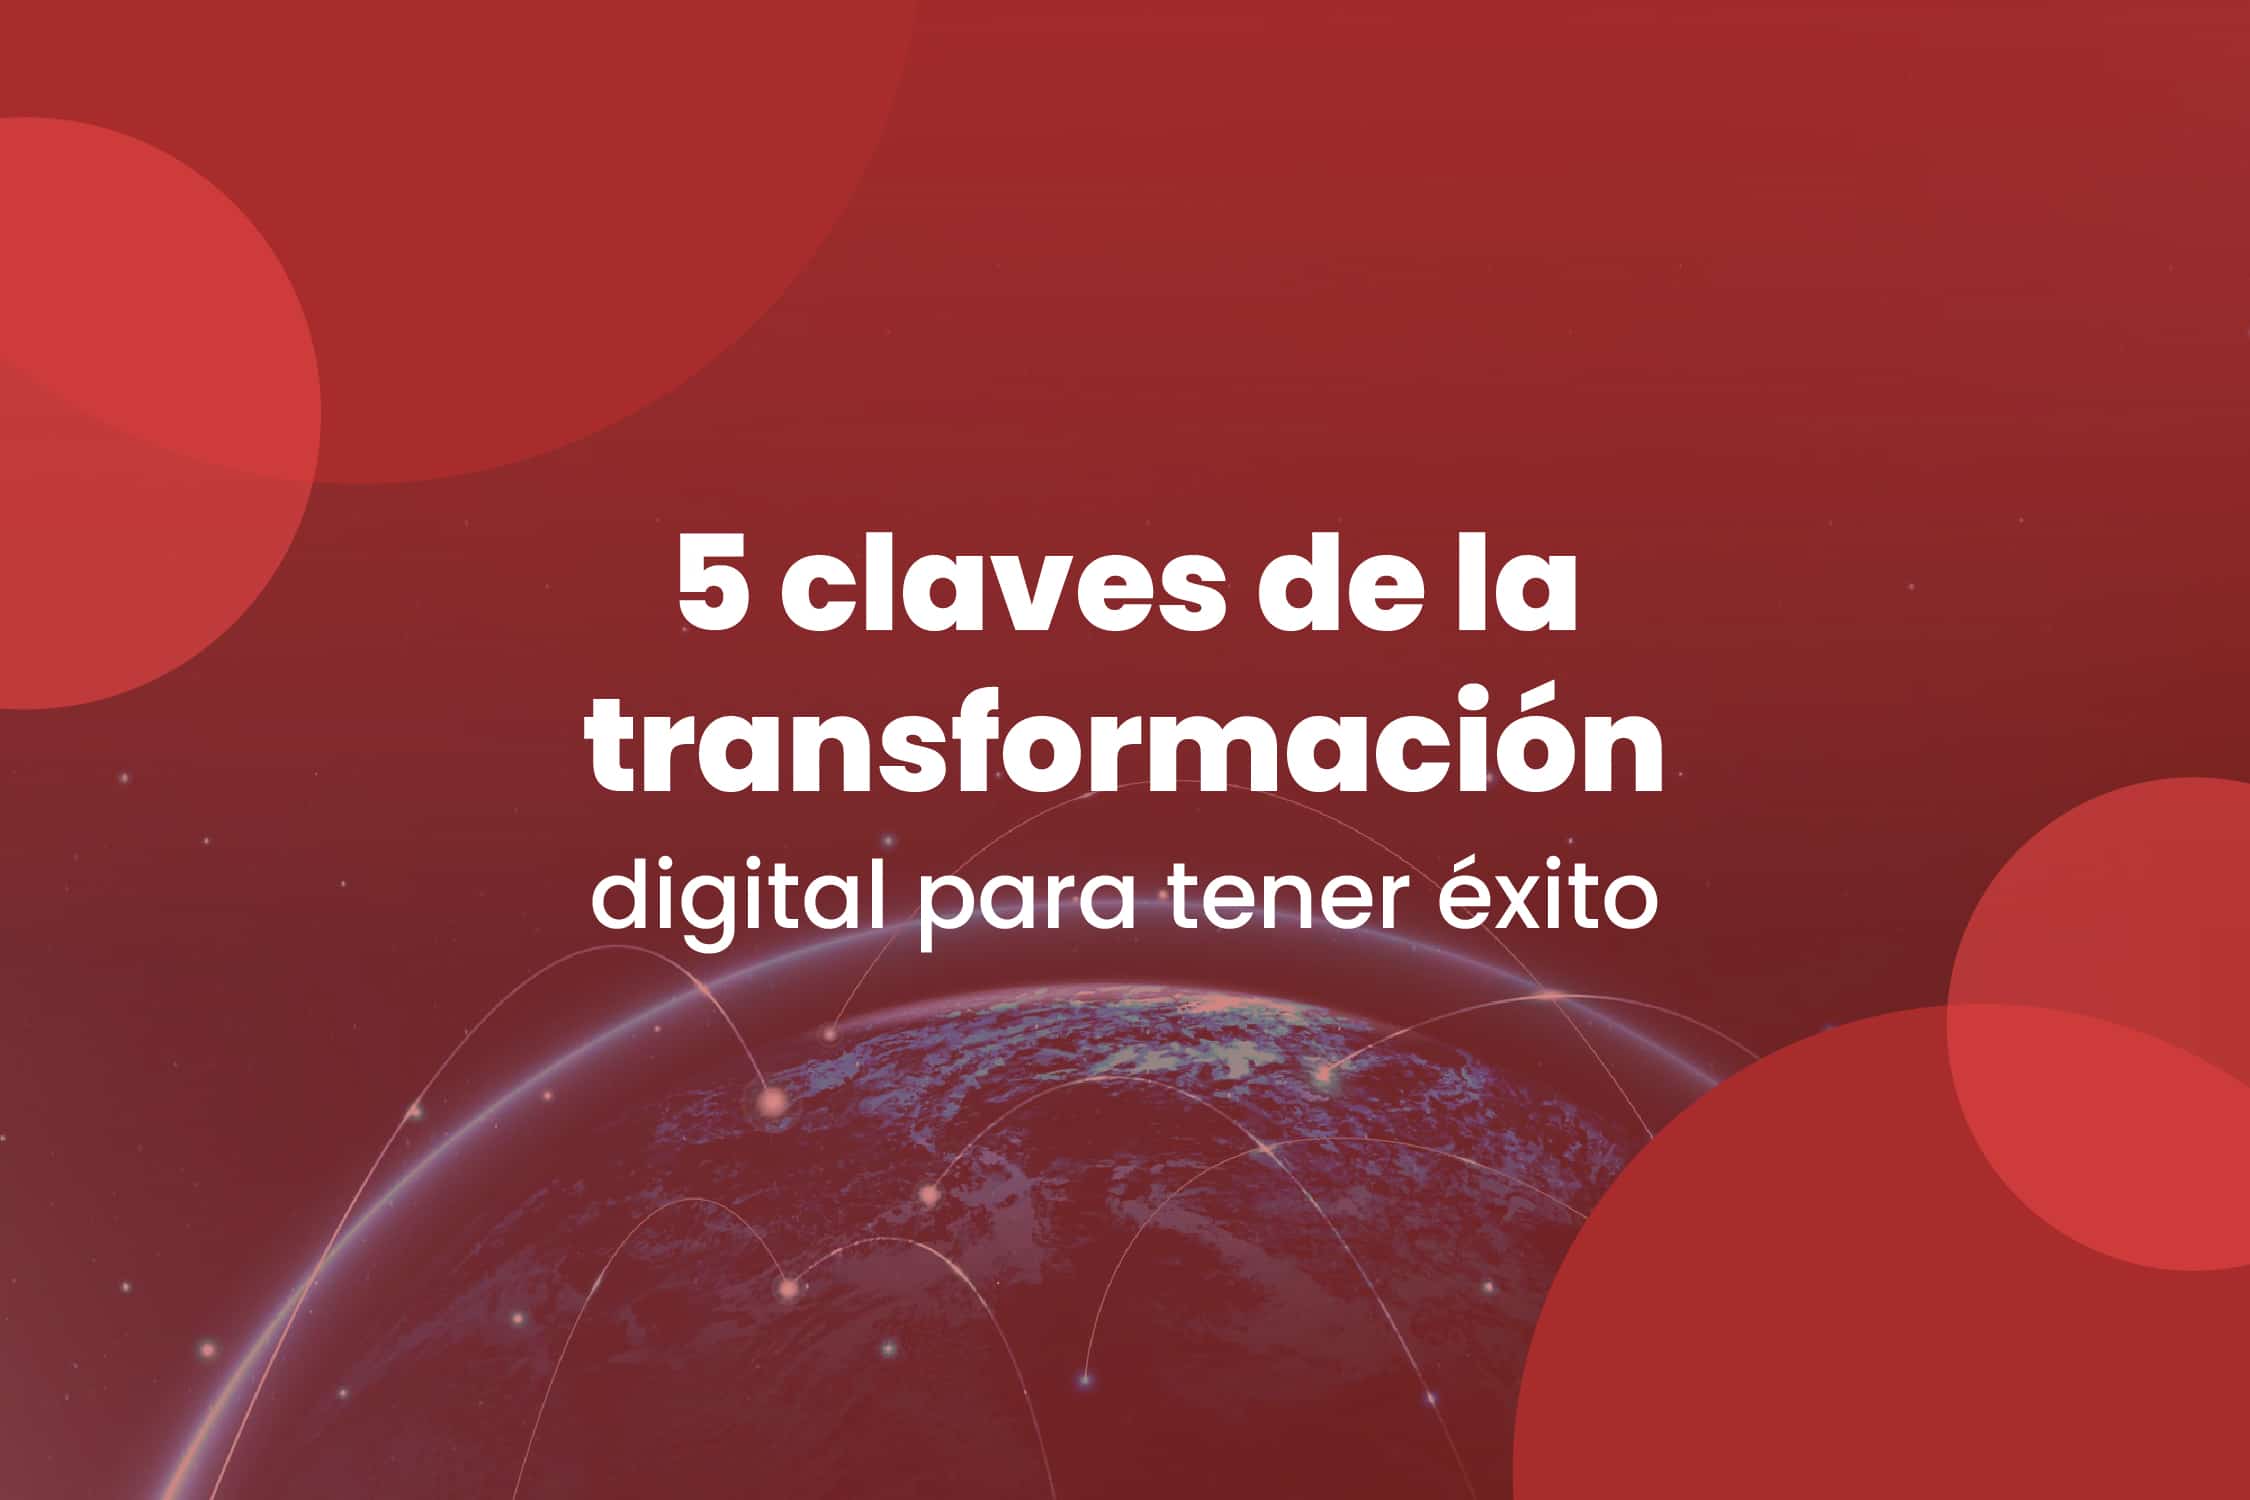 5 claves de la transformación digital